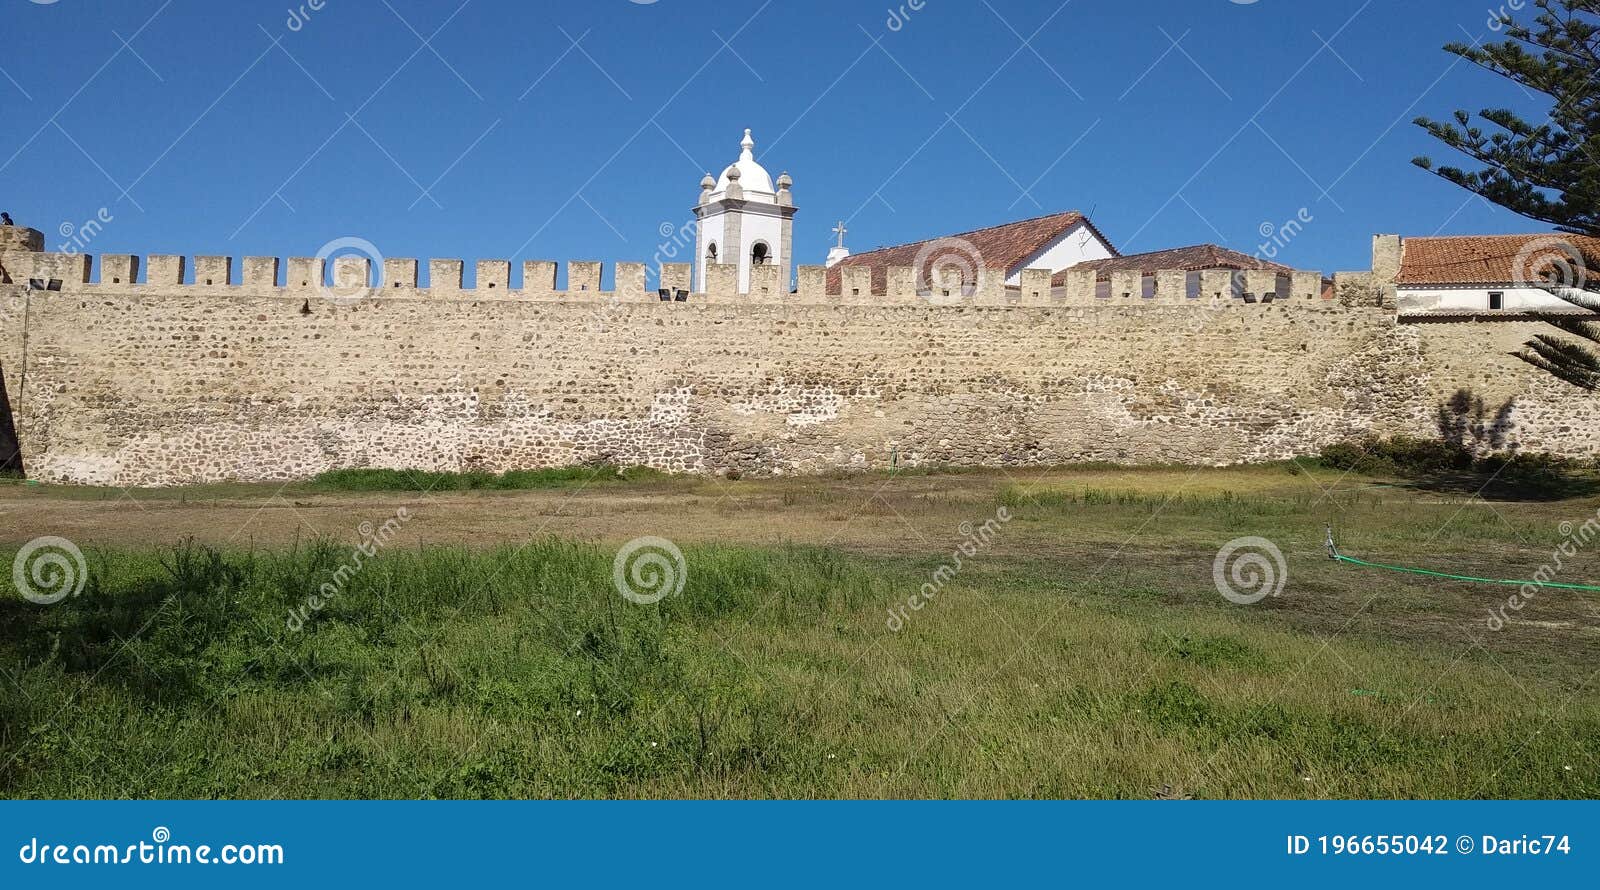 castelo of sines castel, alentejo, portugal